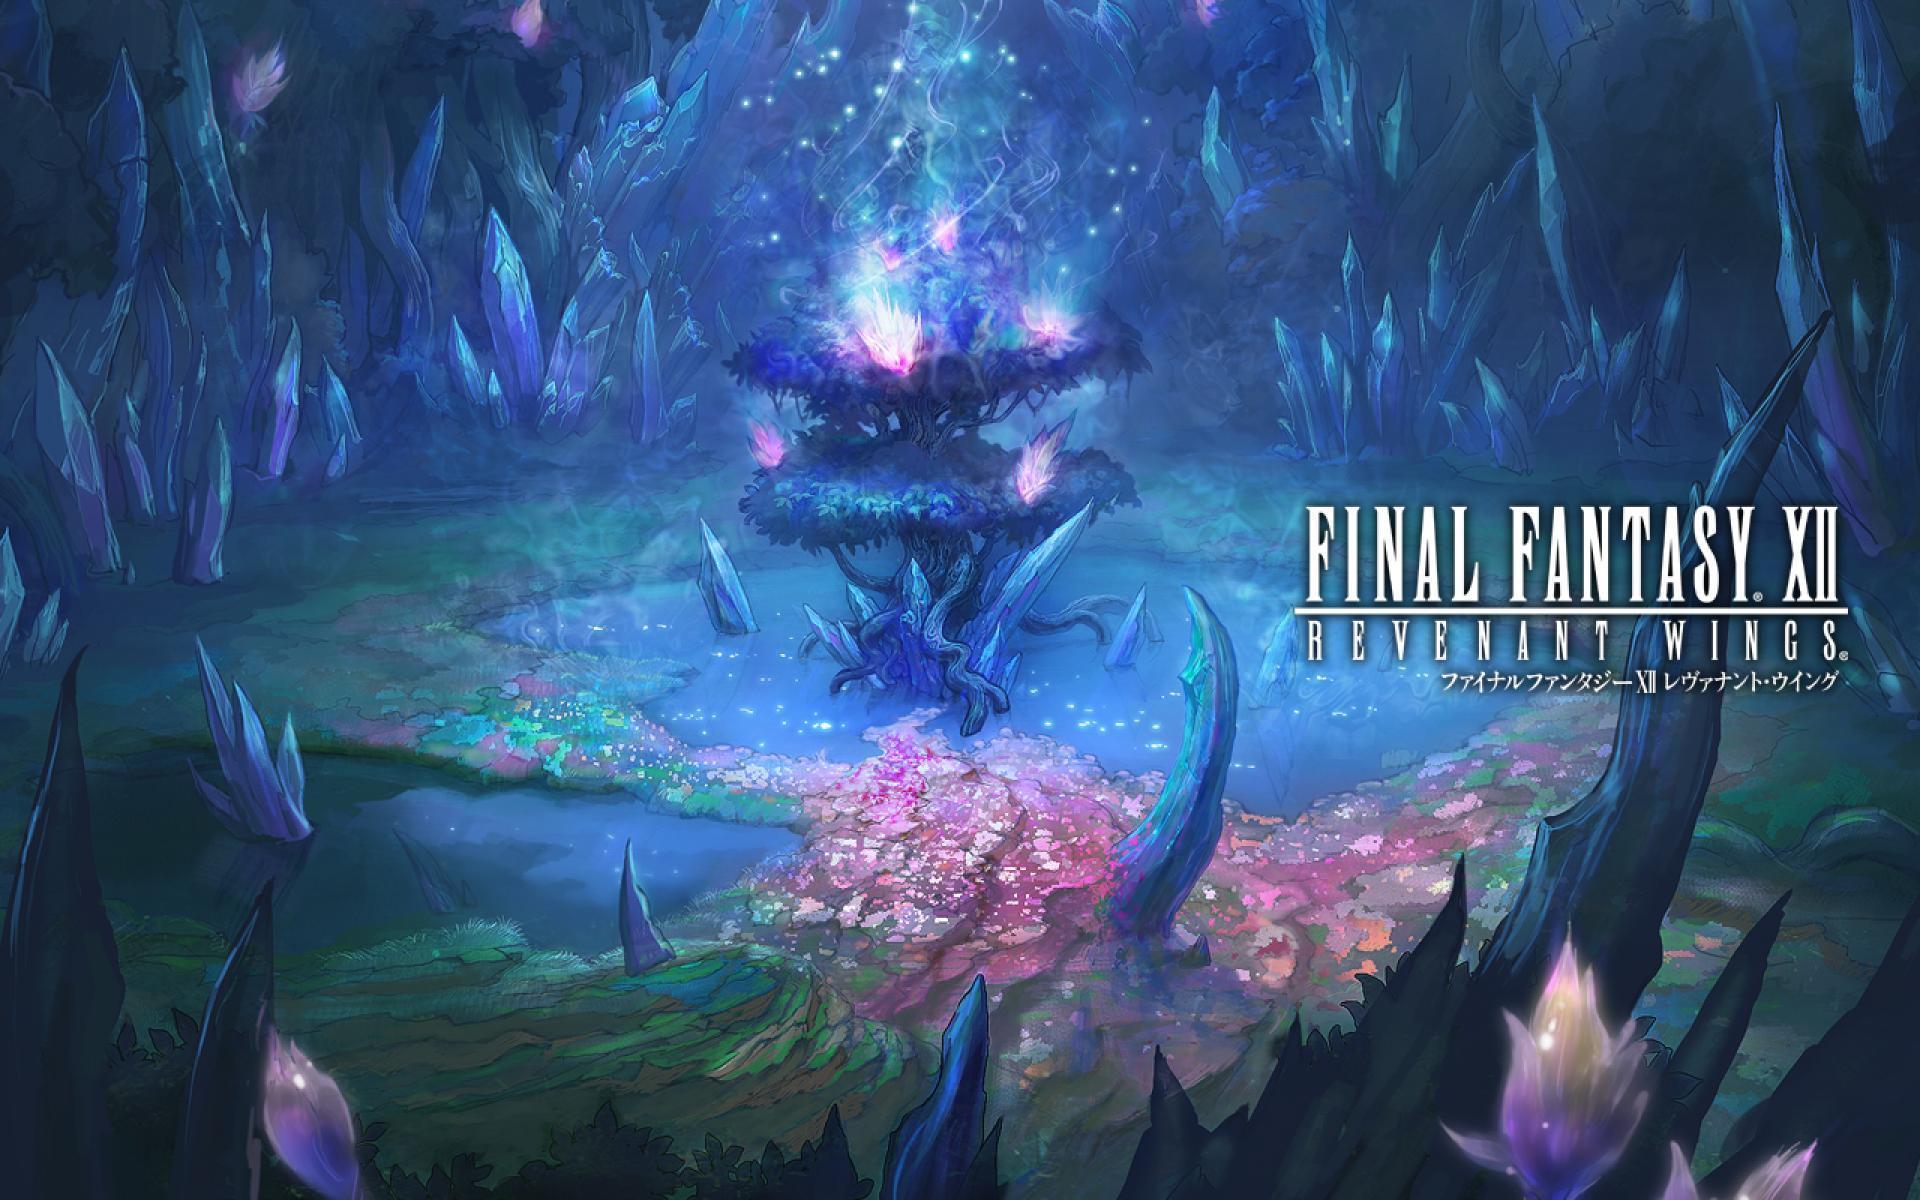 Final fantasy XII